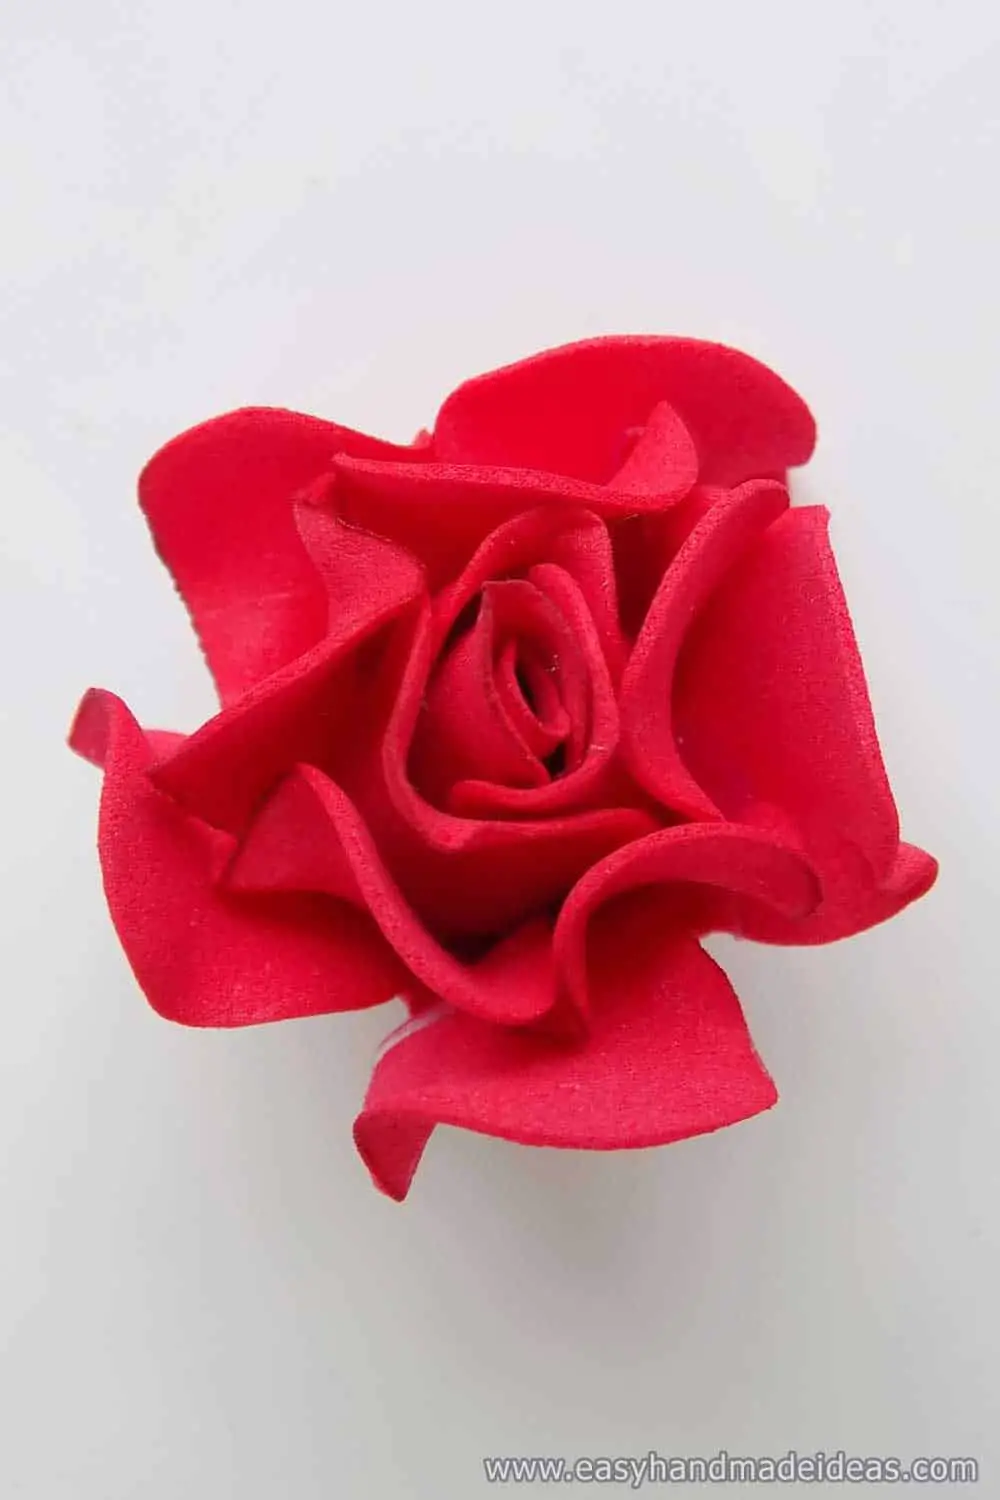 Rose from Foamiran